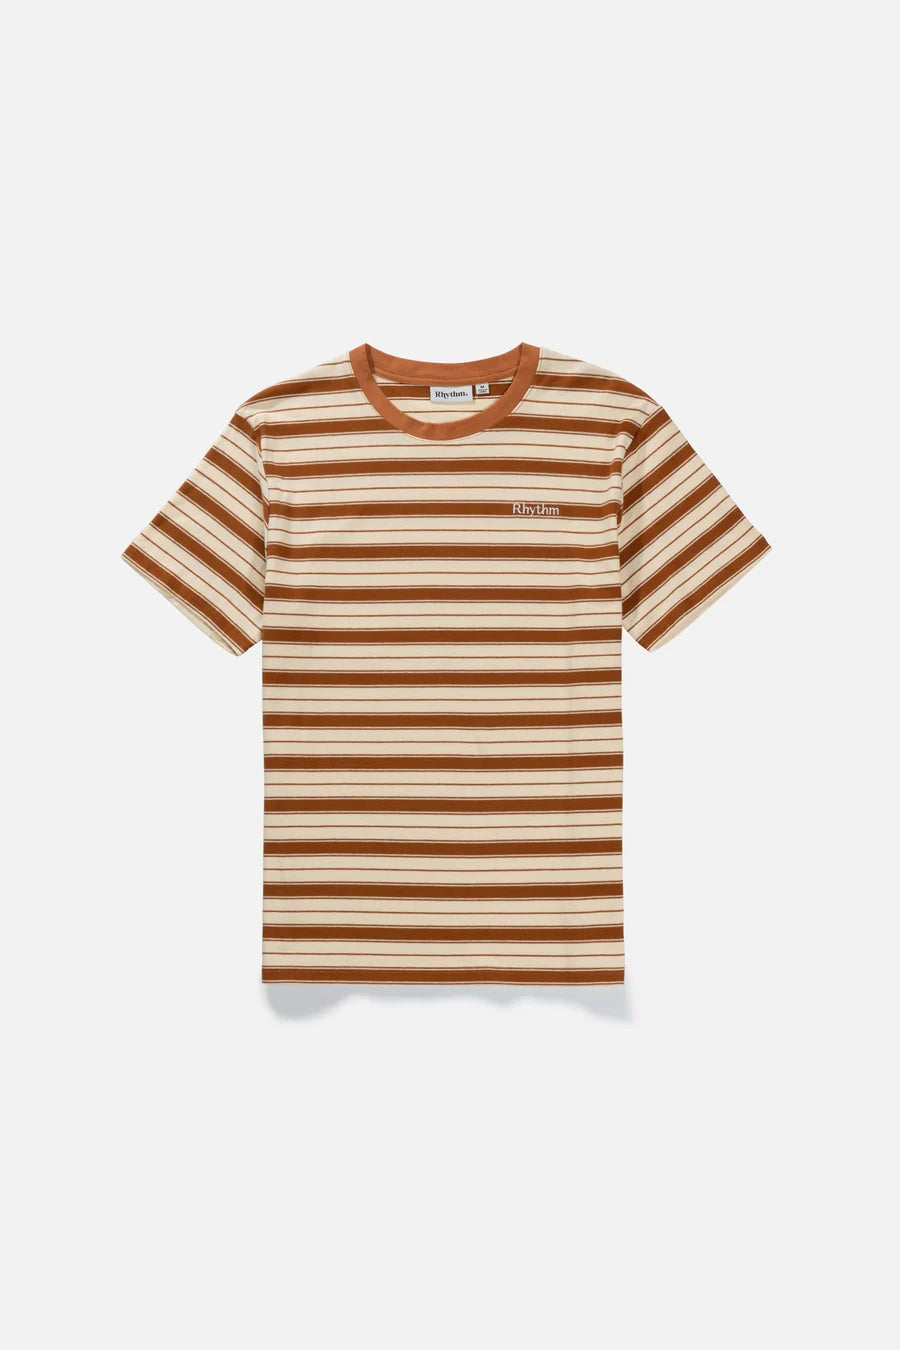 Rhythm Everyday Stripe SS T-Shirt Cedar